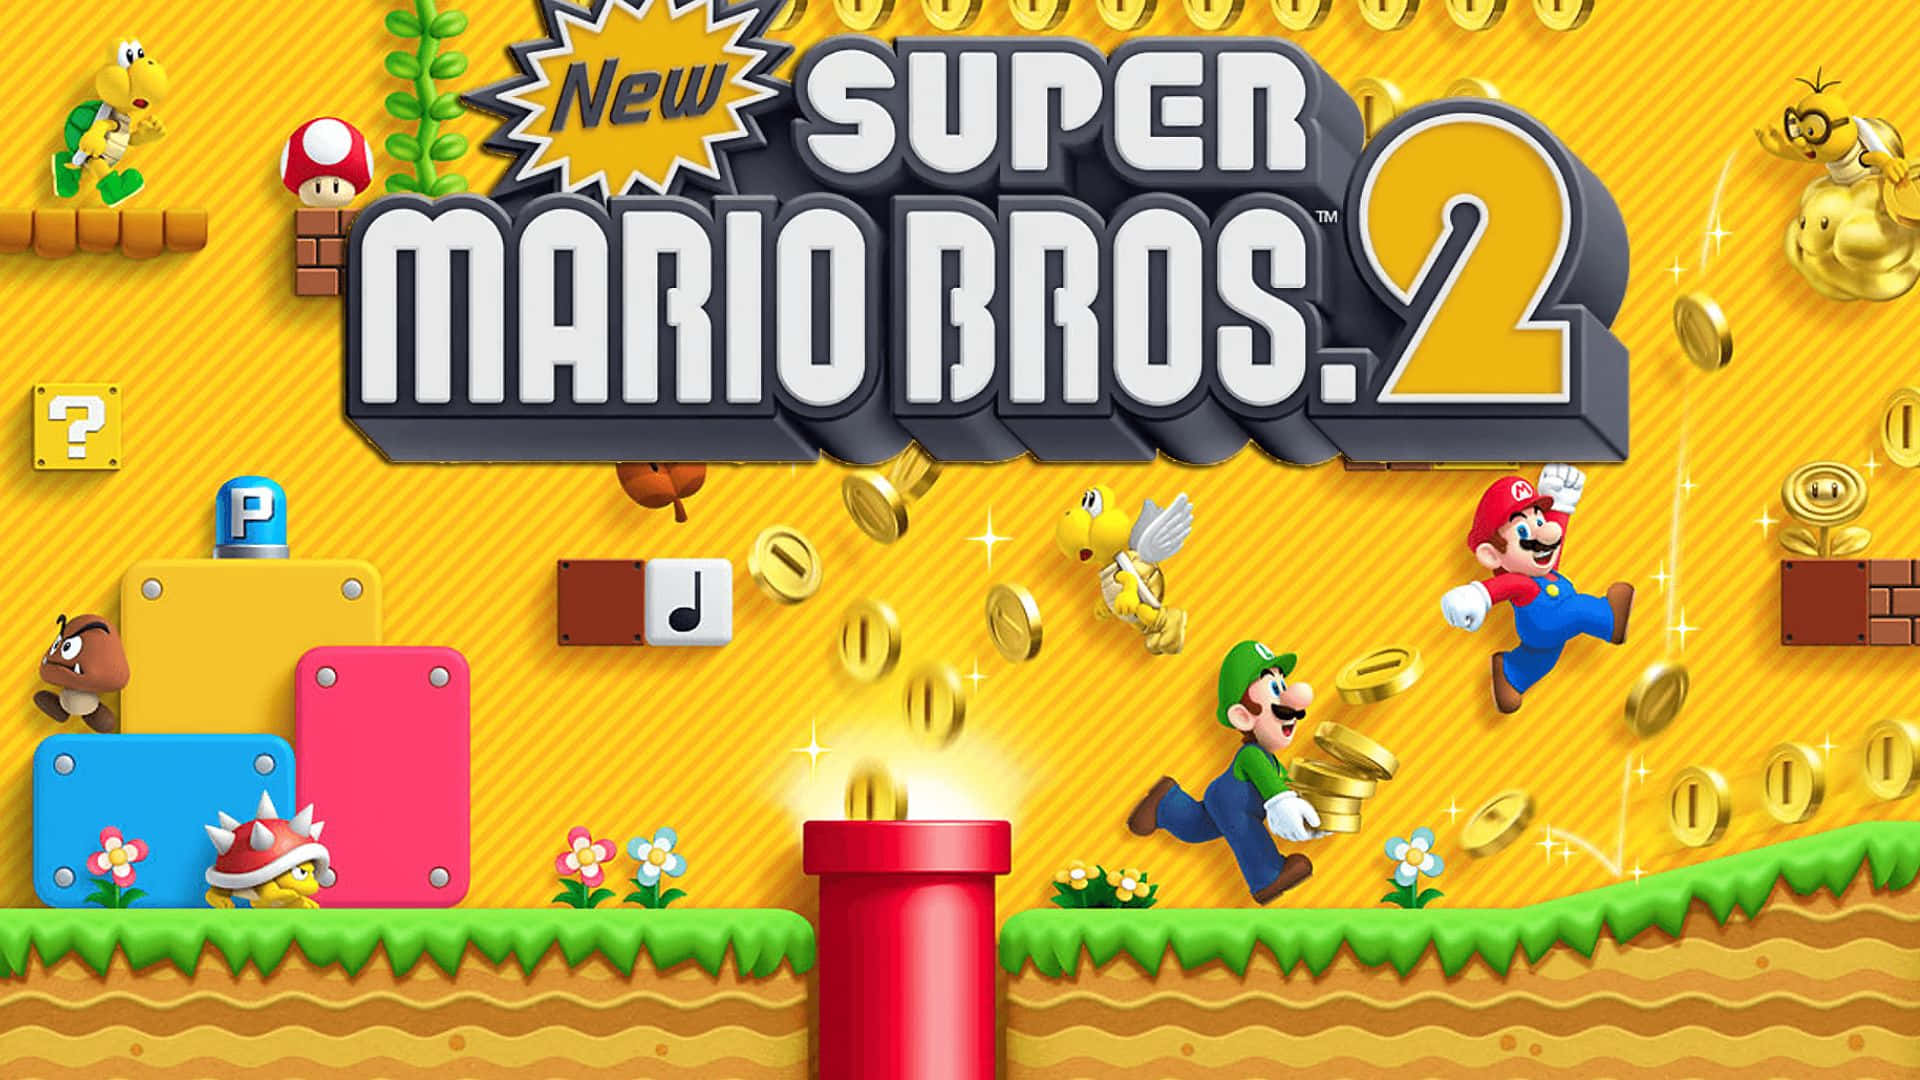 Mario bros special. New super Mario Bros 2 Nintendo 3ds. New super Mario Bros. Нинтендо ДС. New super Mario Bros 2 Wii. New super Mario Bros Nintendo DS.